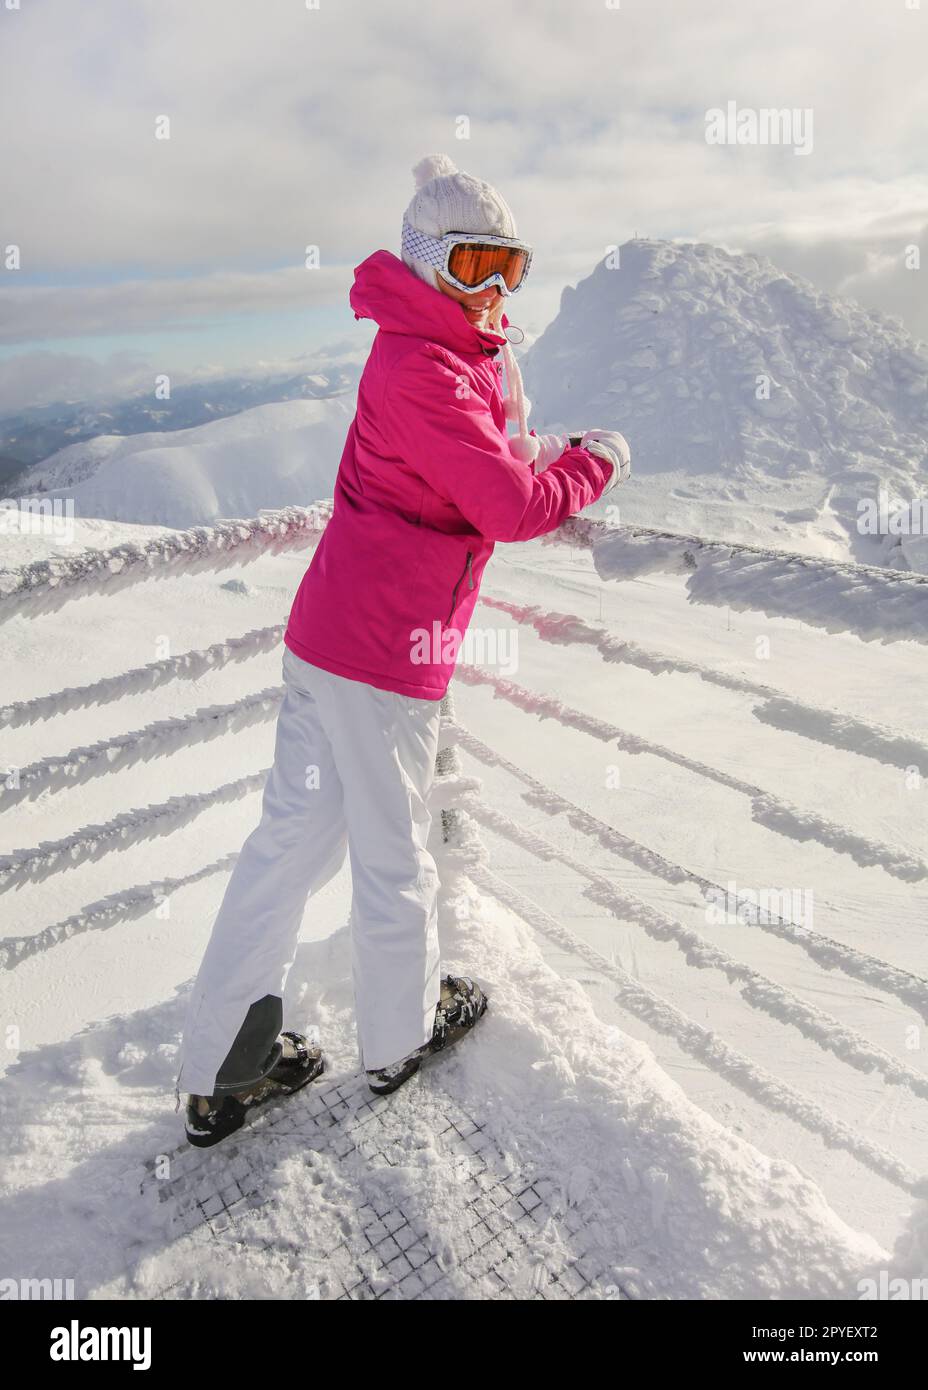 Junge Frau in Rosa ski Jacke, Hosen, Schuhe, Mütze und Handschuhe, lehnte sich auf Schnee bedeckten Rampe, lächelnd. Stockfoto